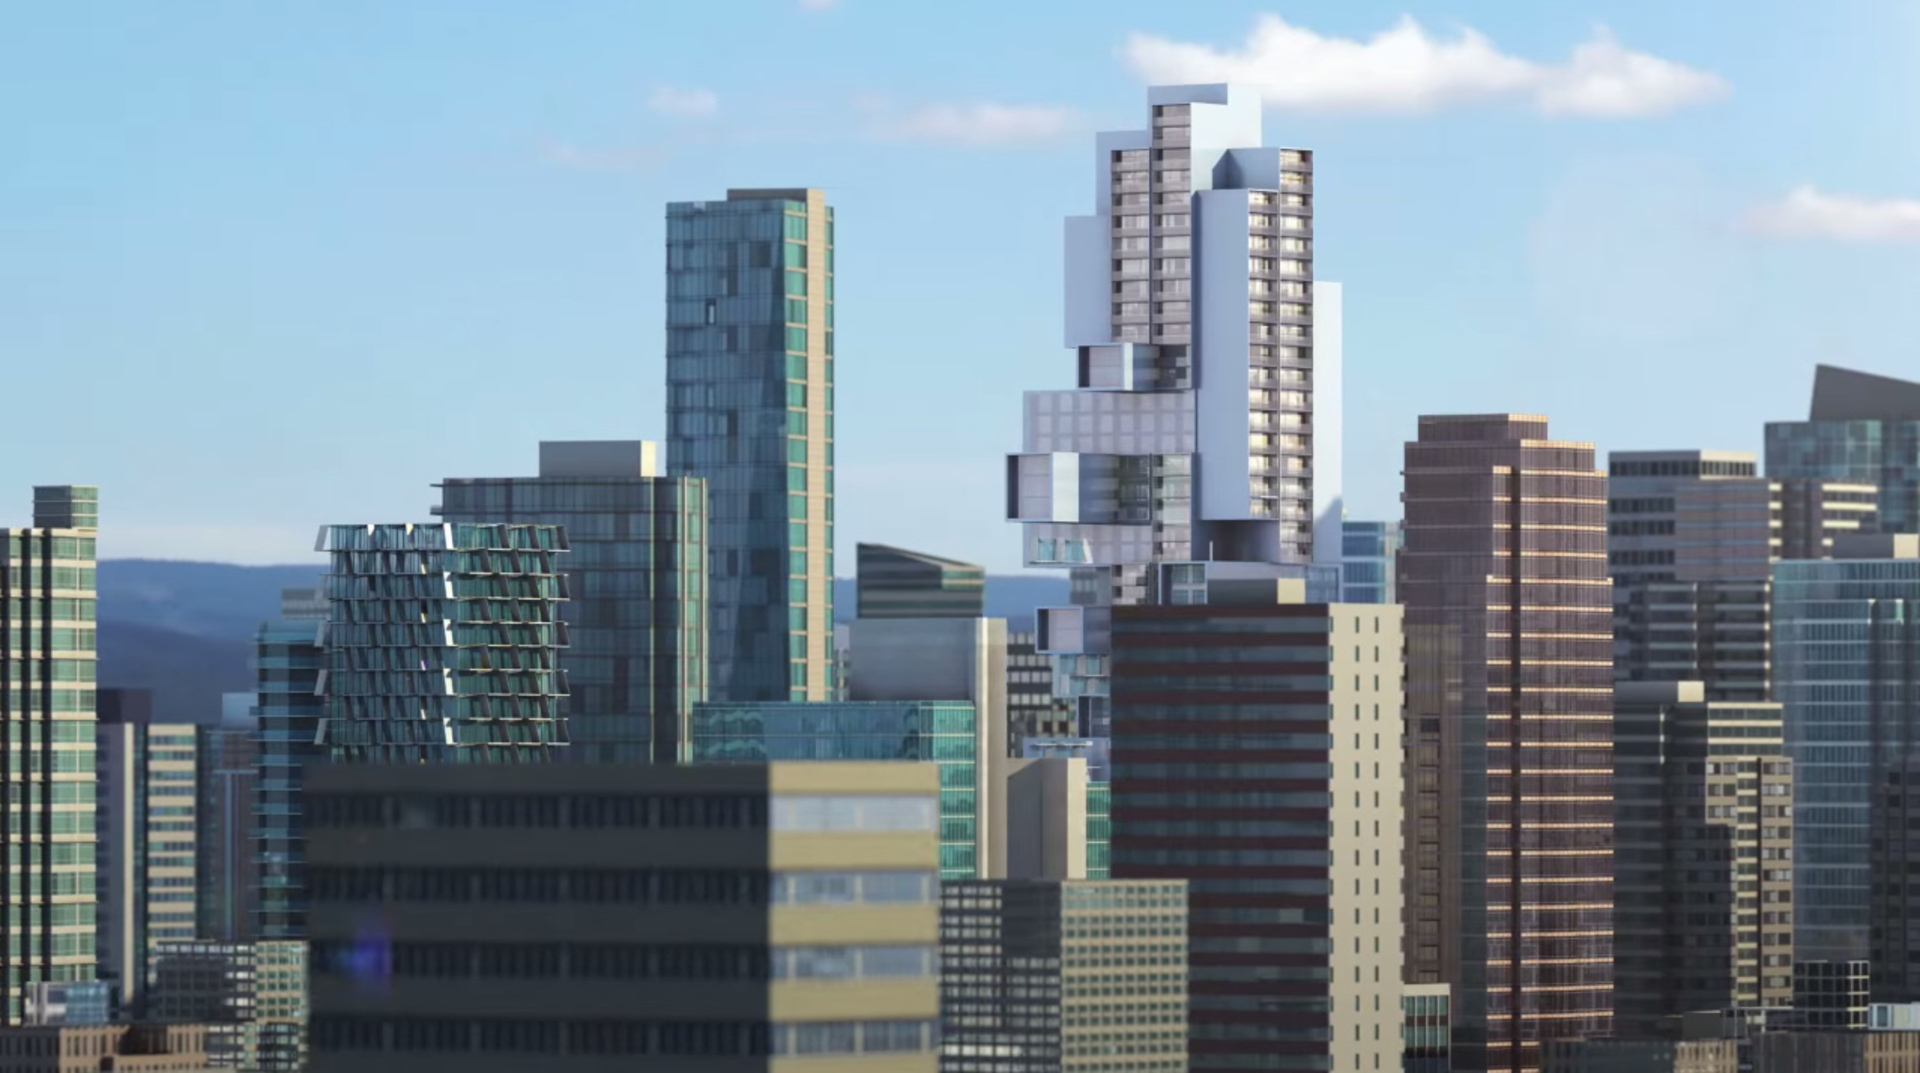 Fifteen Fifteen render of Vancouver Skyline